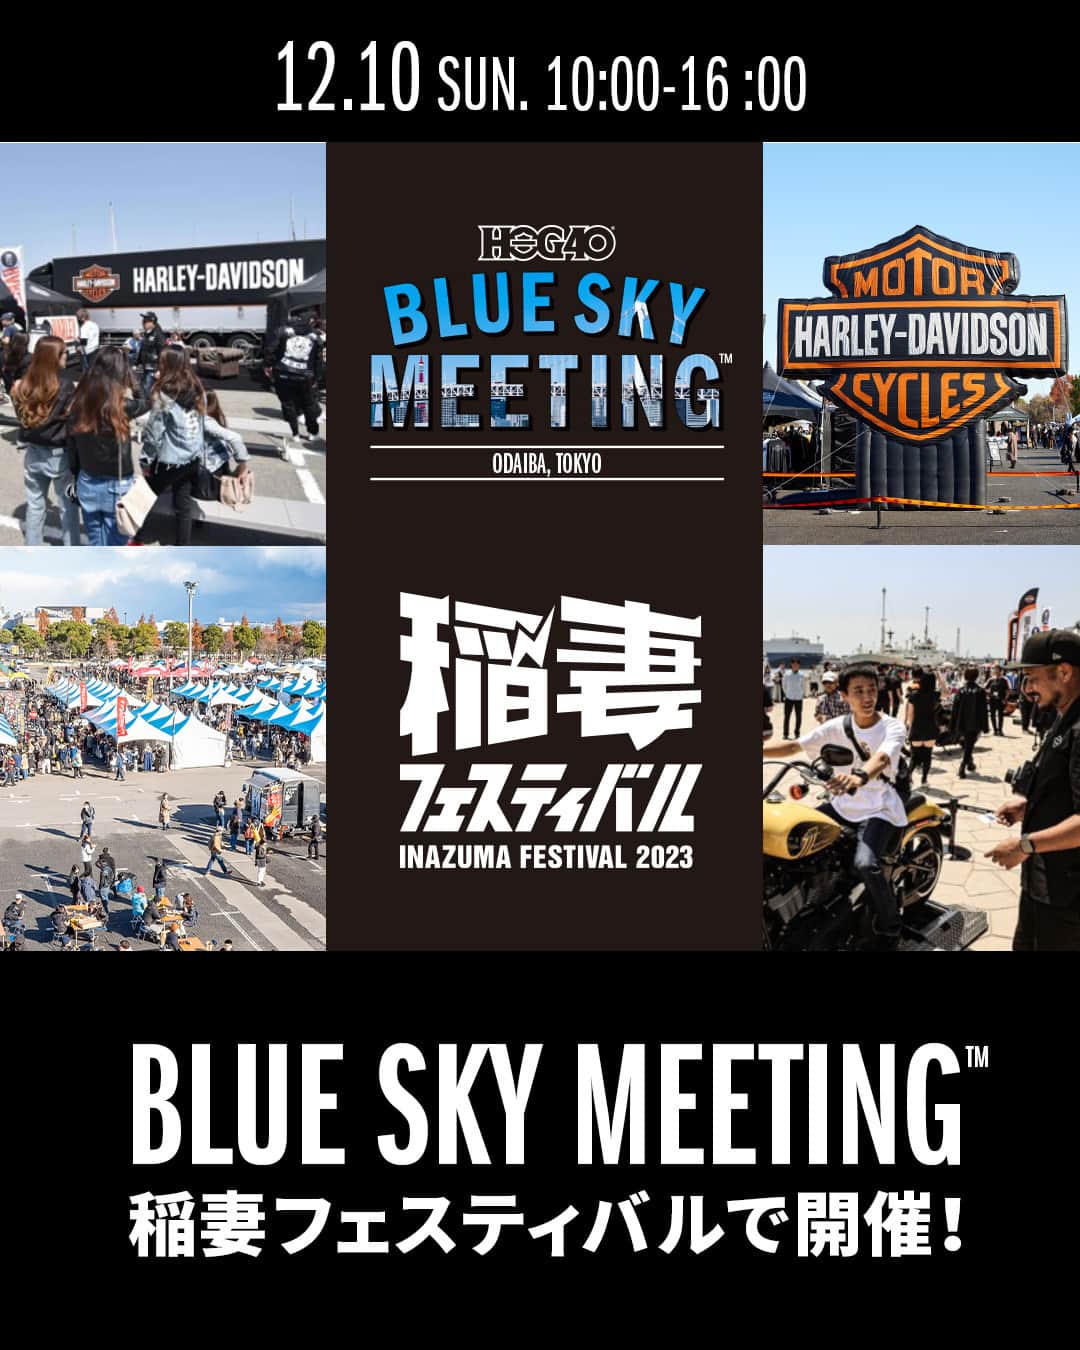 Harley-Davidson Japanのインスタグラム：「【BLUE SKY MEETING™】いよいよ今週末！12/10(日)お台場で東京初開催 今年最後のBLUE SKY MEETINGが「稲妻フェスティバル」に登場。話題の「X350」「X500」をはじめとする最新モデル展示、バイクの免許を持っていなくても擬似運転ができる「ジャンプスタート体験」、アパレルやグッズ販売など見逃せないコンテンツをが盛りだくさんです。さらに、会場内のアンケート参加で「ハーレー120周年記念レザーポーチ」をプレゼント！数に限りがありますのでお早めに。 H.O.G.会員には、今年を締めくくる特典の「オリジナルワッペン」限定配布のほか、コーヒーもご提供。「稲妻フェスティバル」のアメリカンなファッションやフード、様々な体験型コンテンツと合わせて是非お楽しみください。  日時：12/10（日）10:00～16:00 会場：お台場特設会場（東京都江東区青海1丁目1） https://hog.blueskyheaven.jp/event/meeting-odaiba-tokyo/  今回のBLUE SKY MEETINGは、稲妻フェスティバル会場内での開催となります。稲妻フェスティバルのご入場は有料ですが、H.O.G.会員には無料の稲妻フェス入場チケットと無料の二輪駐車スペースをご用意しています。駐車スペースのご利用時間は9〜17時です。駐車台数に限りがあり、混雑状況により入場できない場合がありますのでご了承ください。H.O.G.専用受付を設置予定ですので、会員証のご提示をお願いします。  #HarleyDavidson #ハーレーダビッドソン #UnitedWeRide #BlueSkyMeeting #X350 #X500 #稲妻フェスティバル」